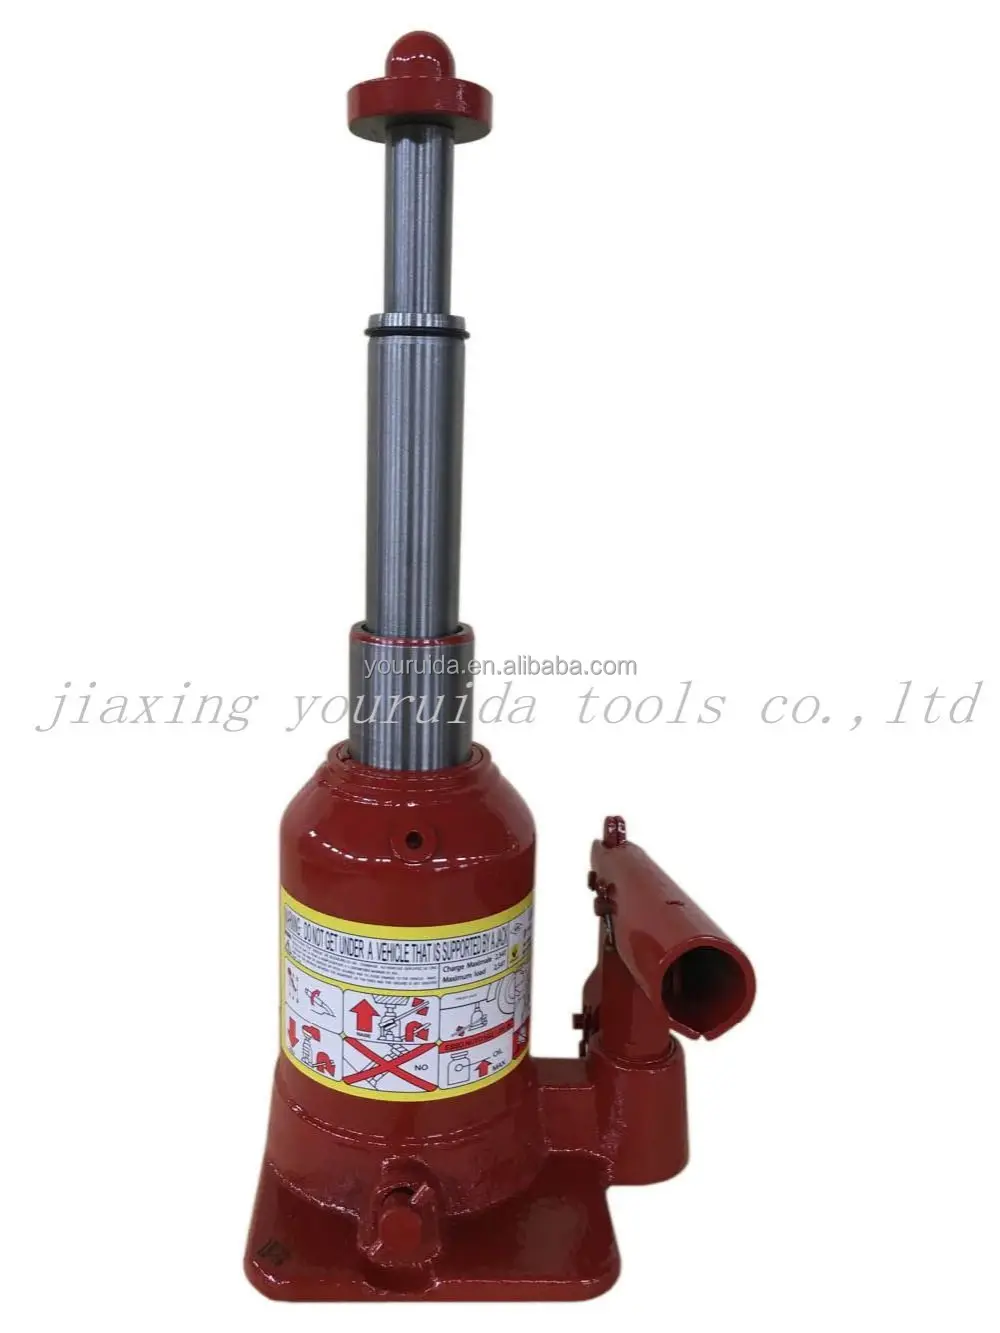 4T Hydraulic Bottle Jack二段階ボトルジャックDouble Ram Bottle Jack